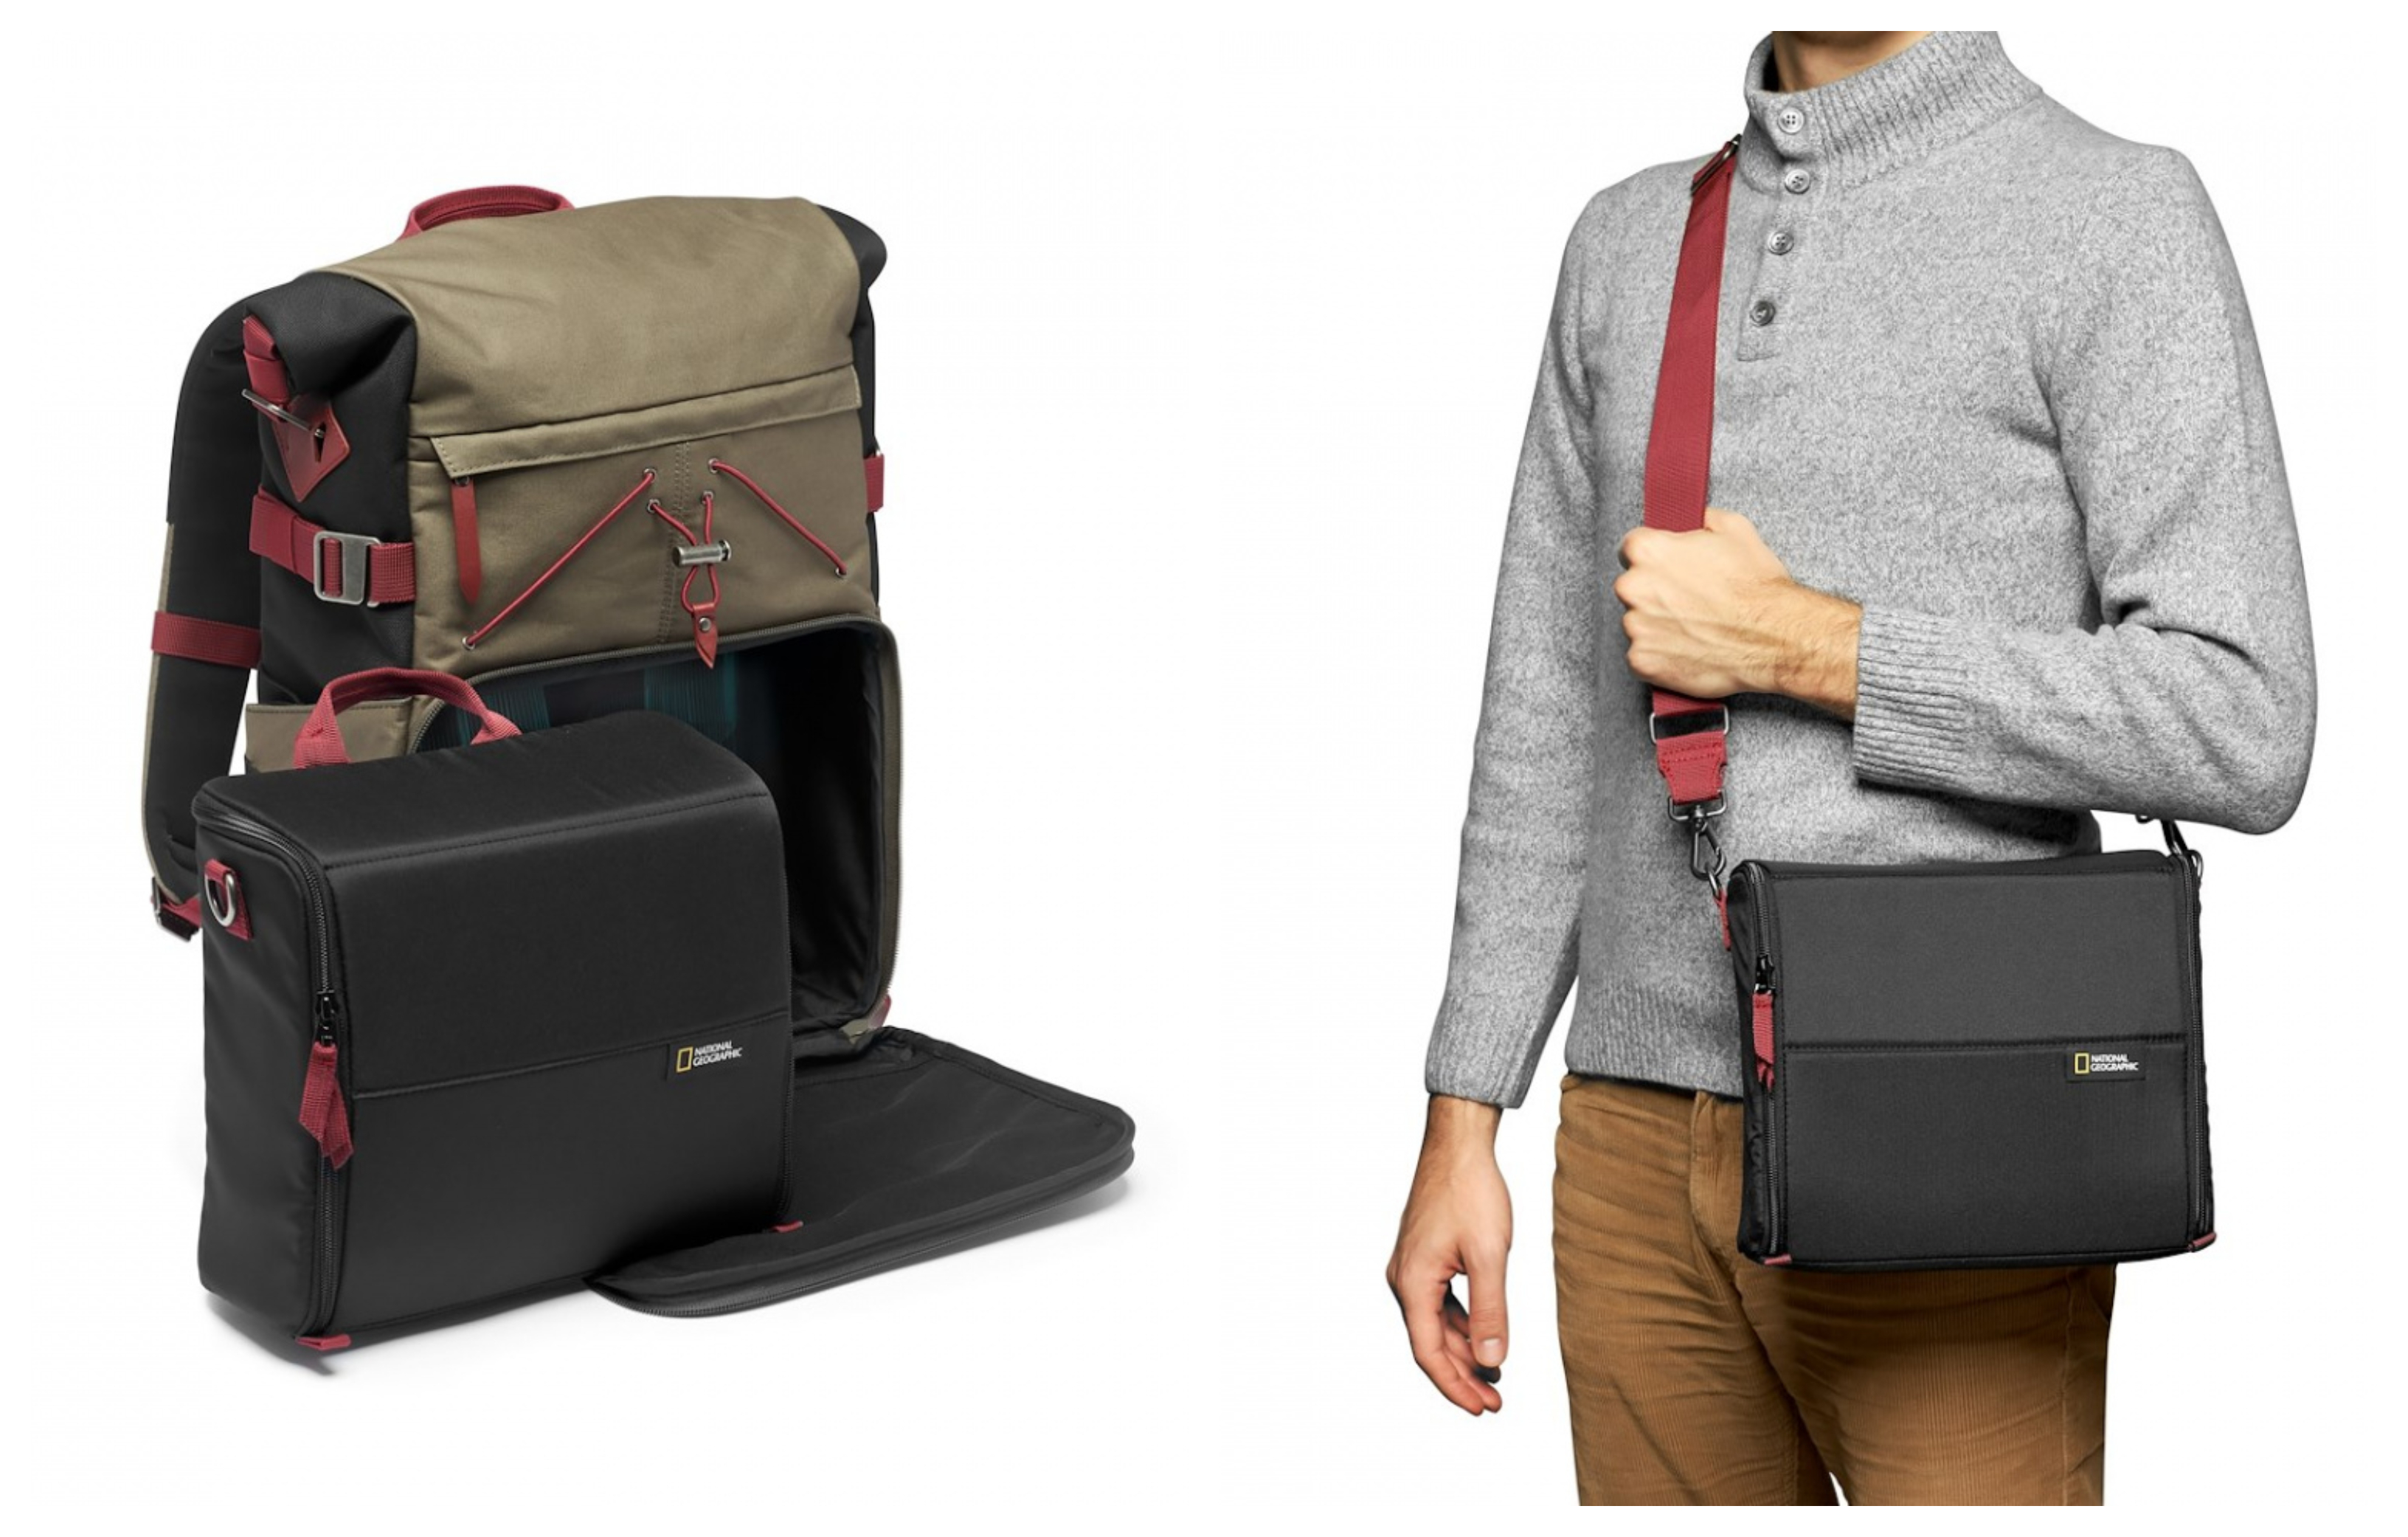 Fotobatoh Nat Geo Iceland Backpack S má veľmi dômyselný dizajn 2v1, ktorý kombinuje klasickú aktovku a batoh do jedného celku.